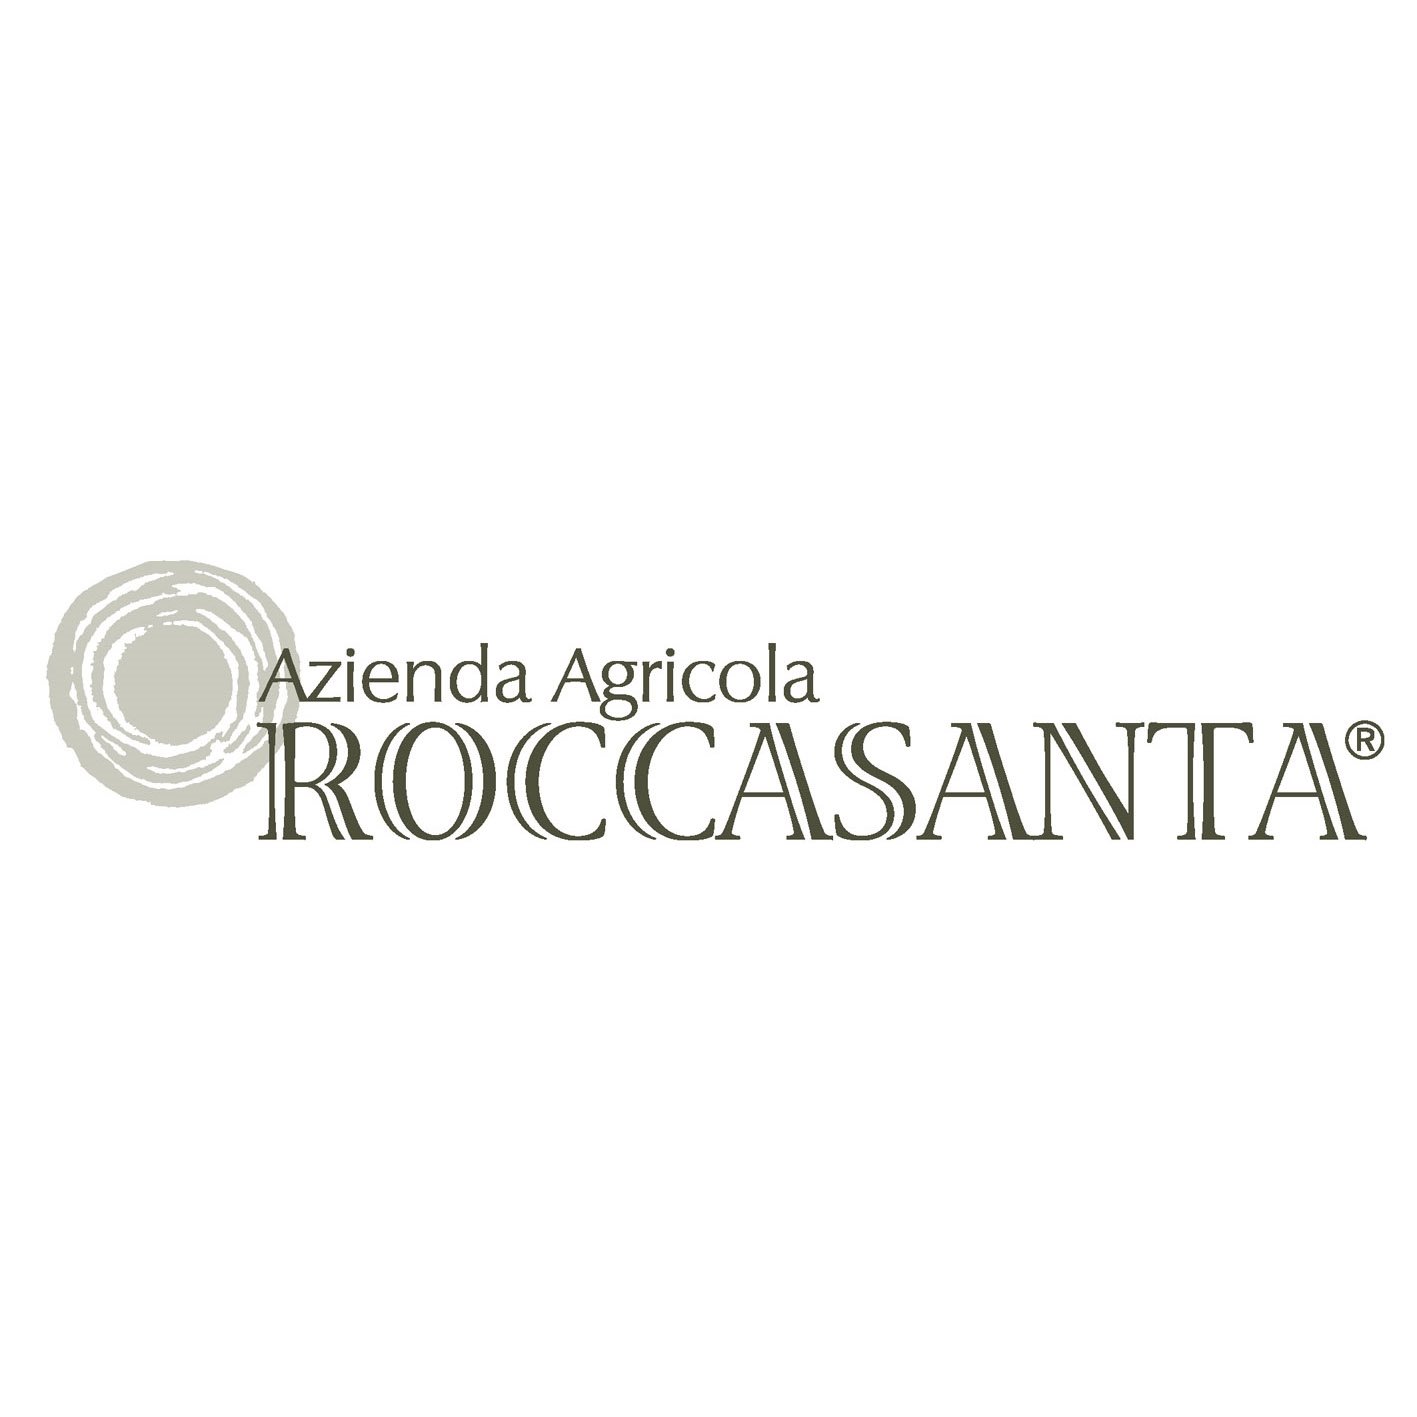 Azienda Agricola Roccasanta